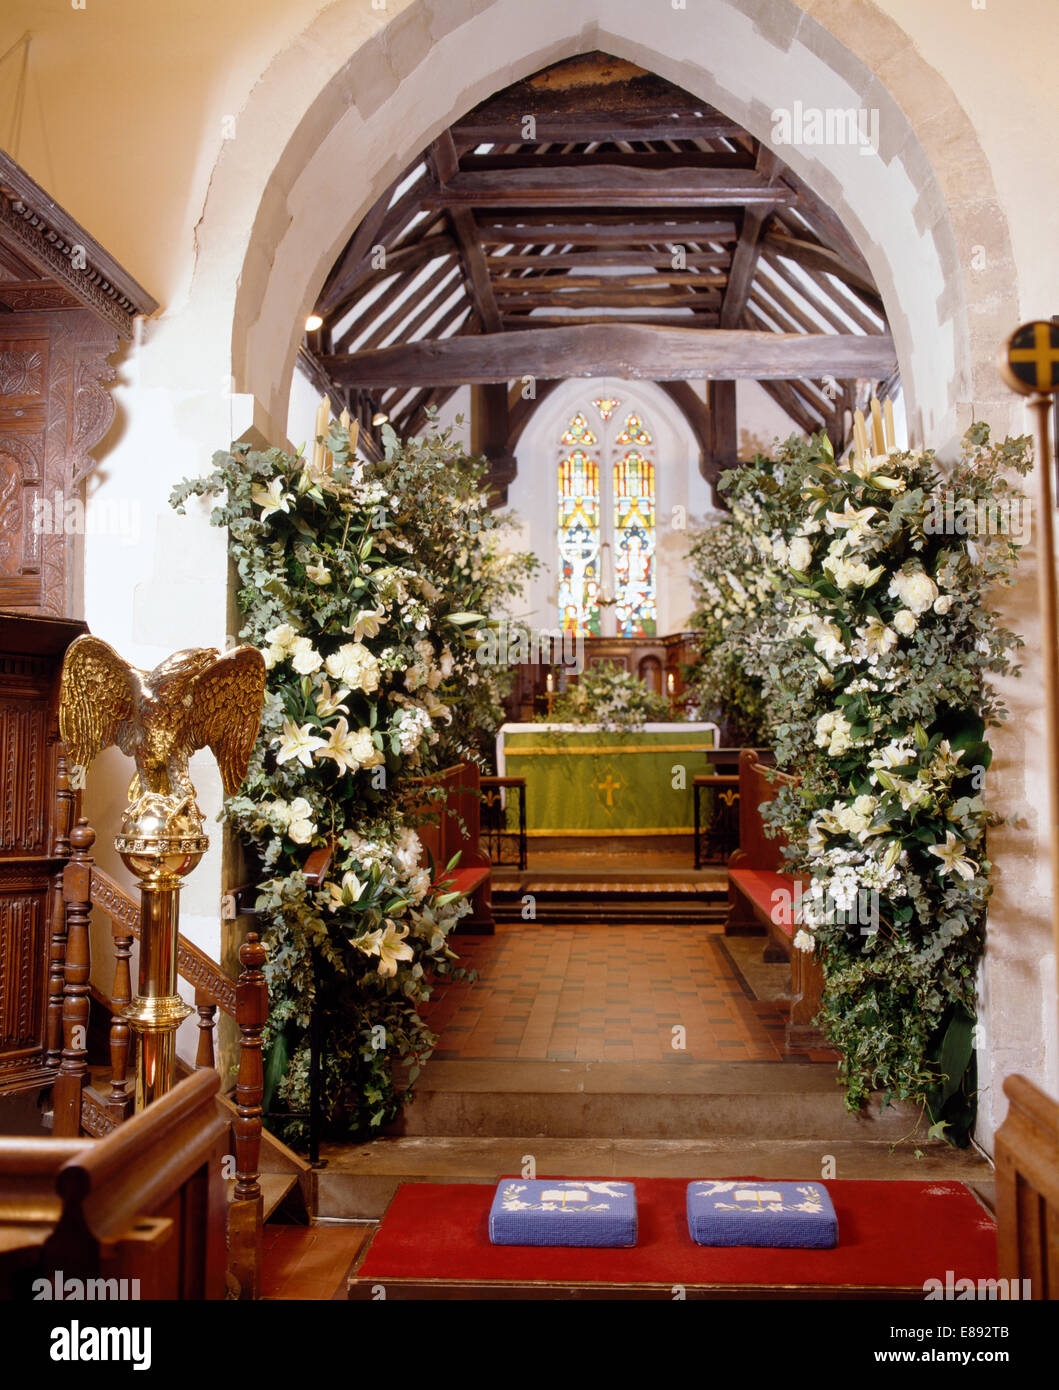 País iglesia decorada para una boda con lirios blancos en suntuosos arreglos florales Foto de stock